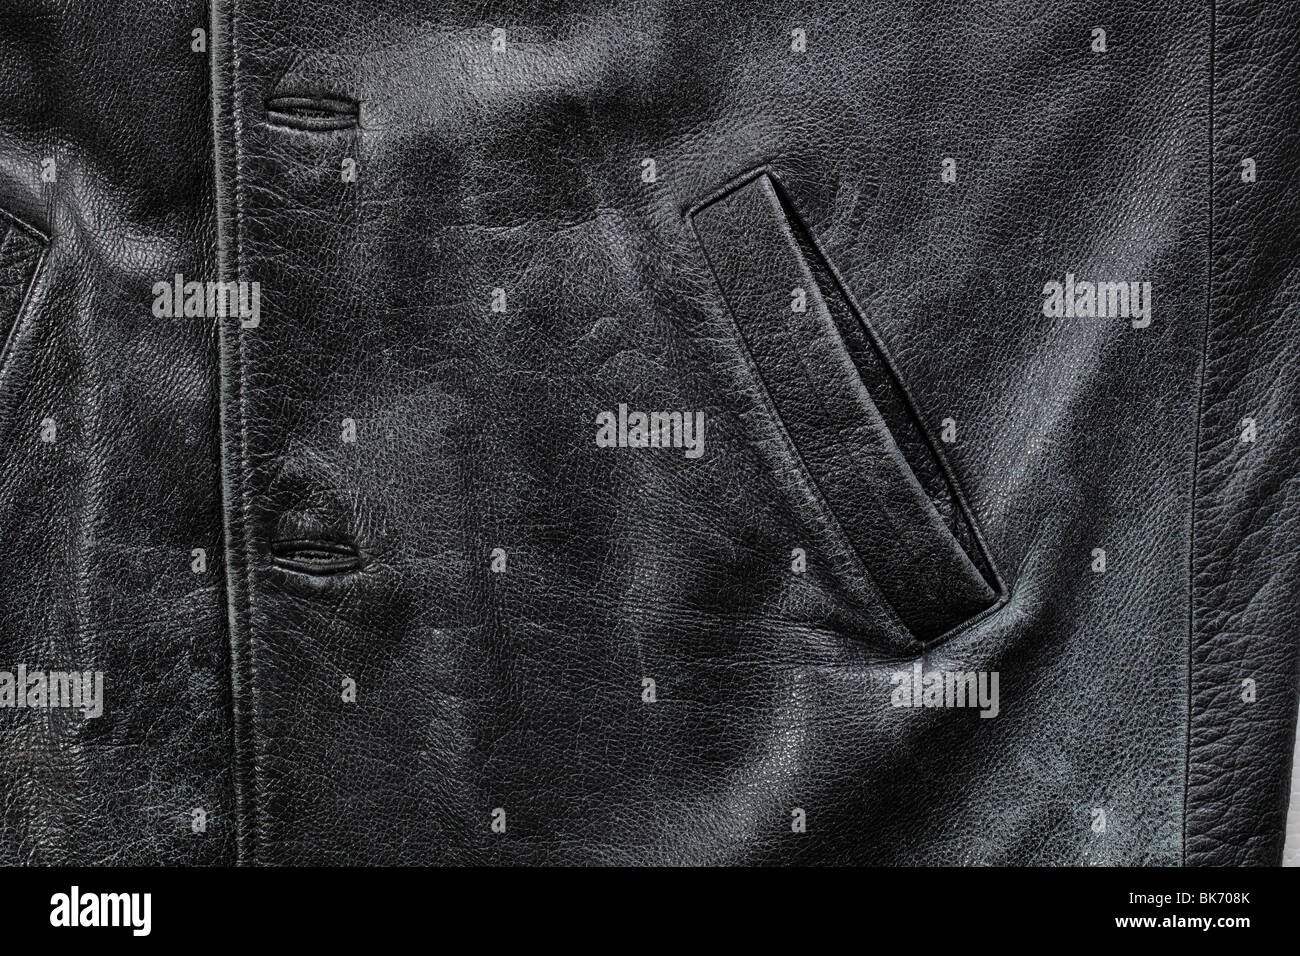 Dettaglio della tasca di un vecchio nero indossato giacca di pelle Foto Stock